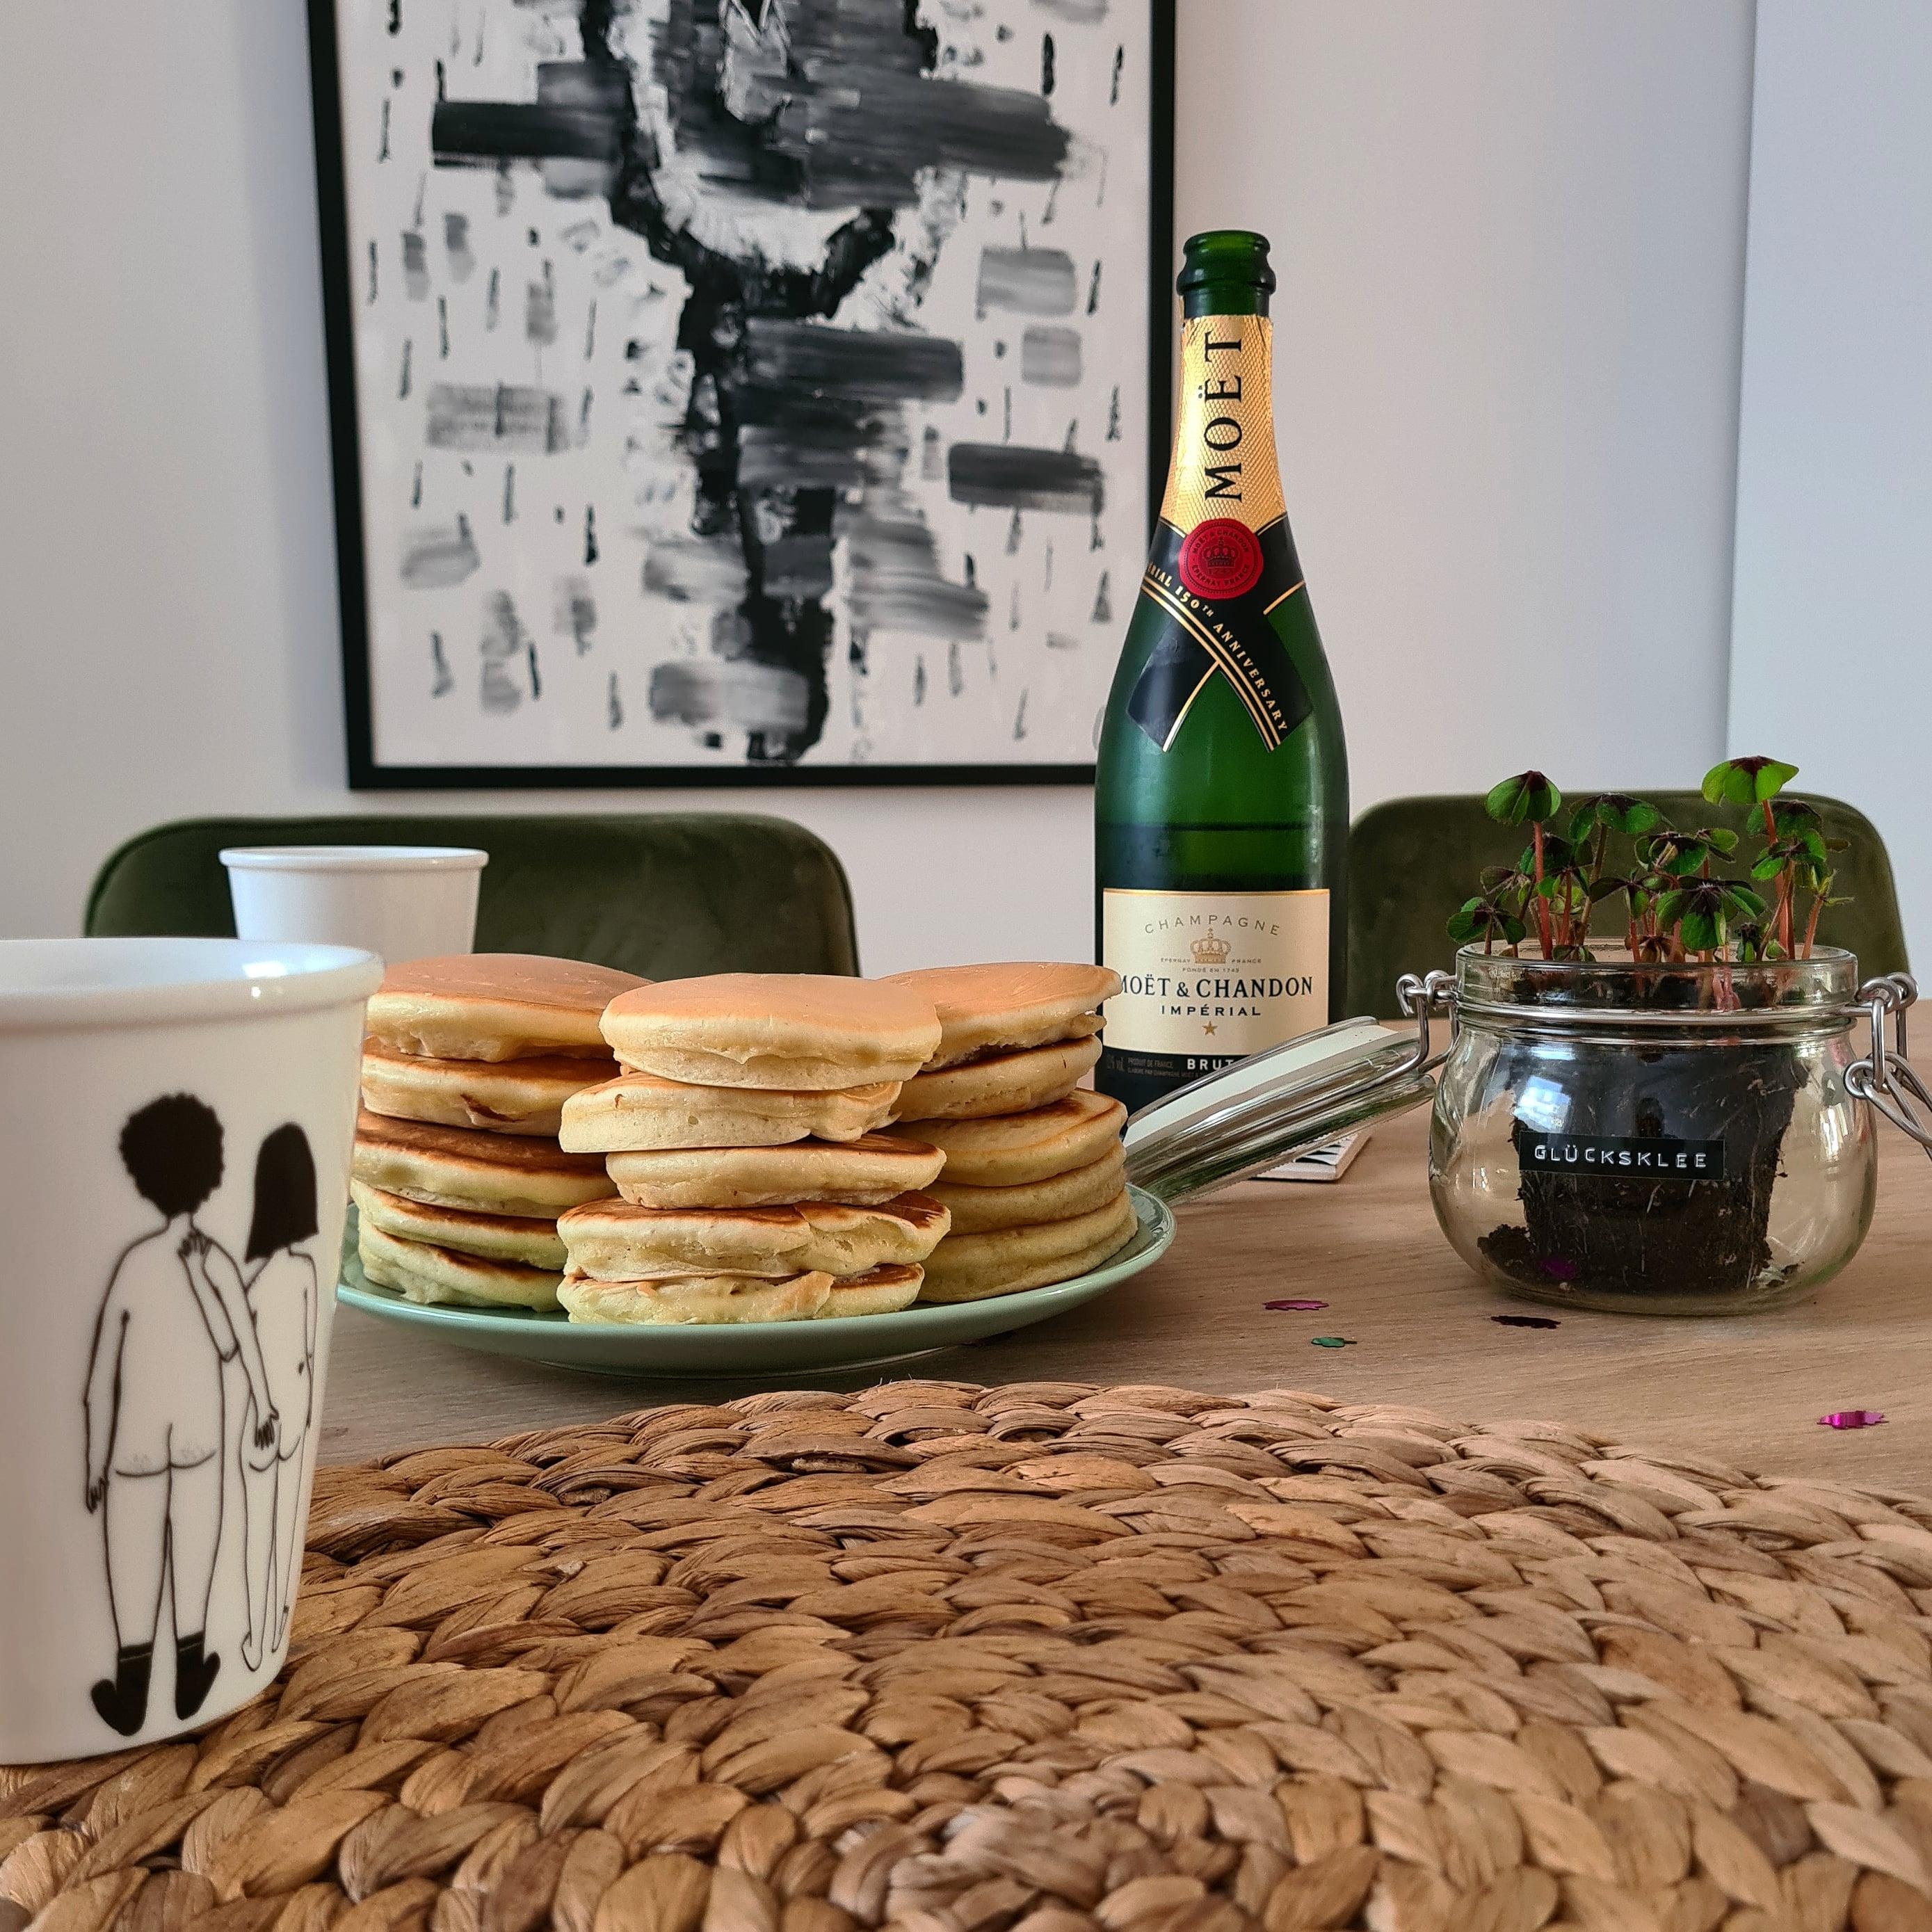 pancake-party zum jahresstart 🥳🥞 #pancakes #latebreakfast #happynewyear